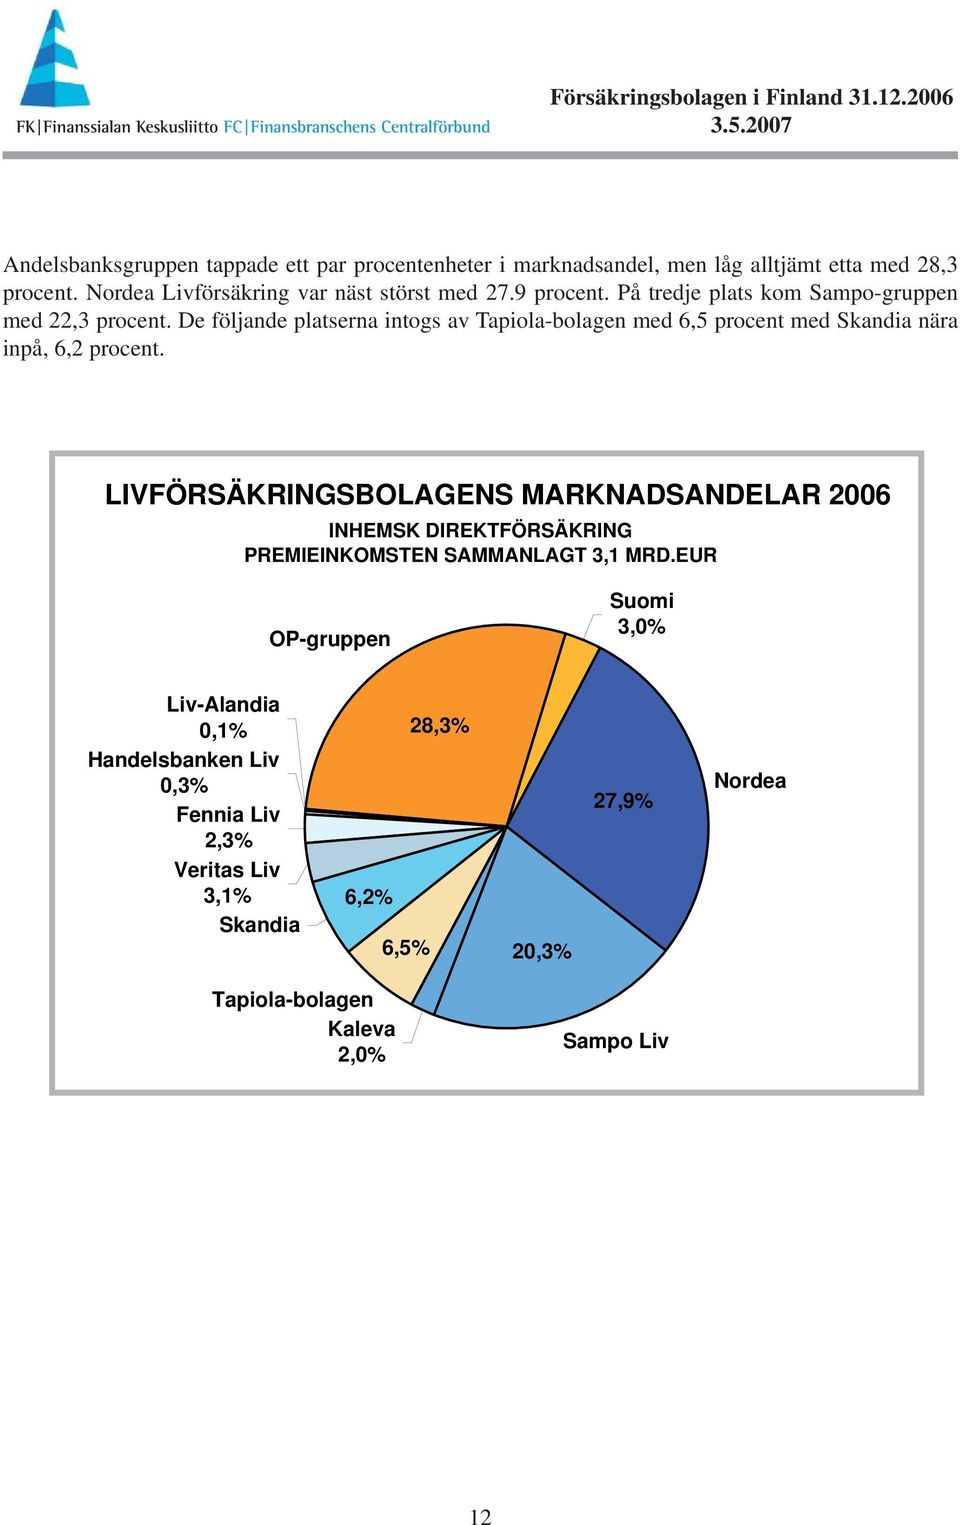 De följande platserna intogs av Tapiola-bolagen med 6,5 procent med Skandia nära inpå, 6,2 procent.